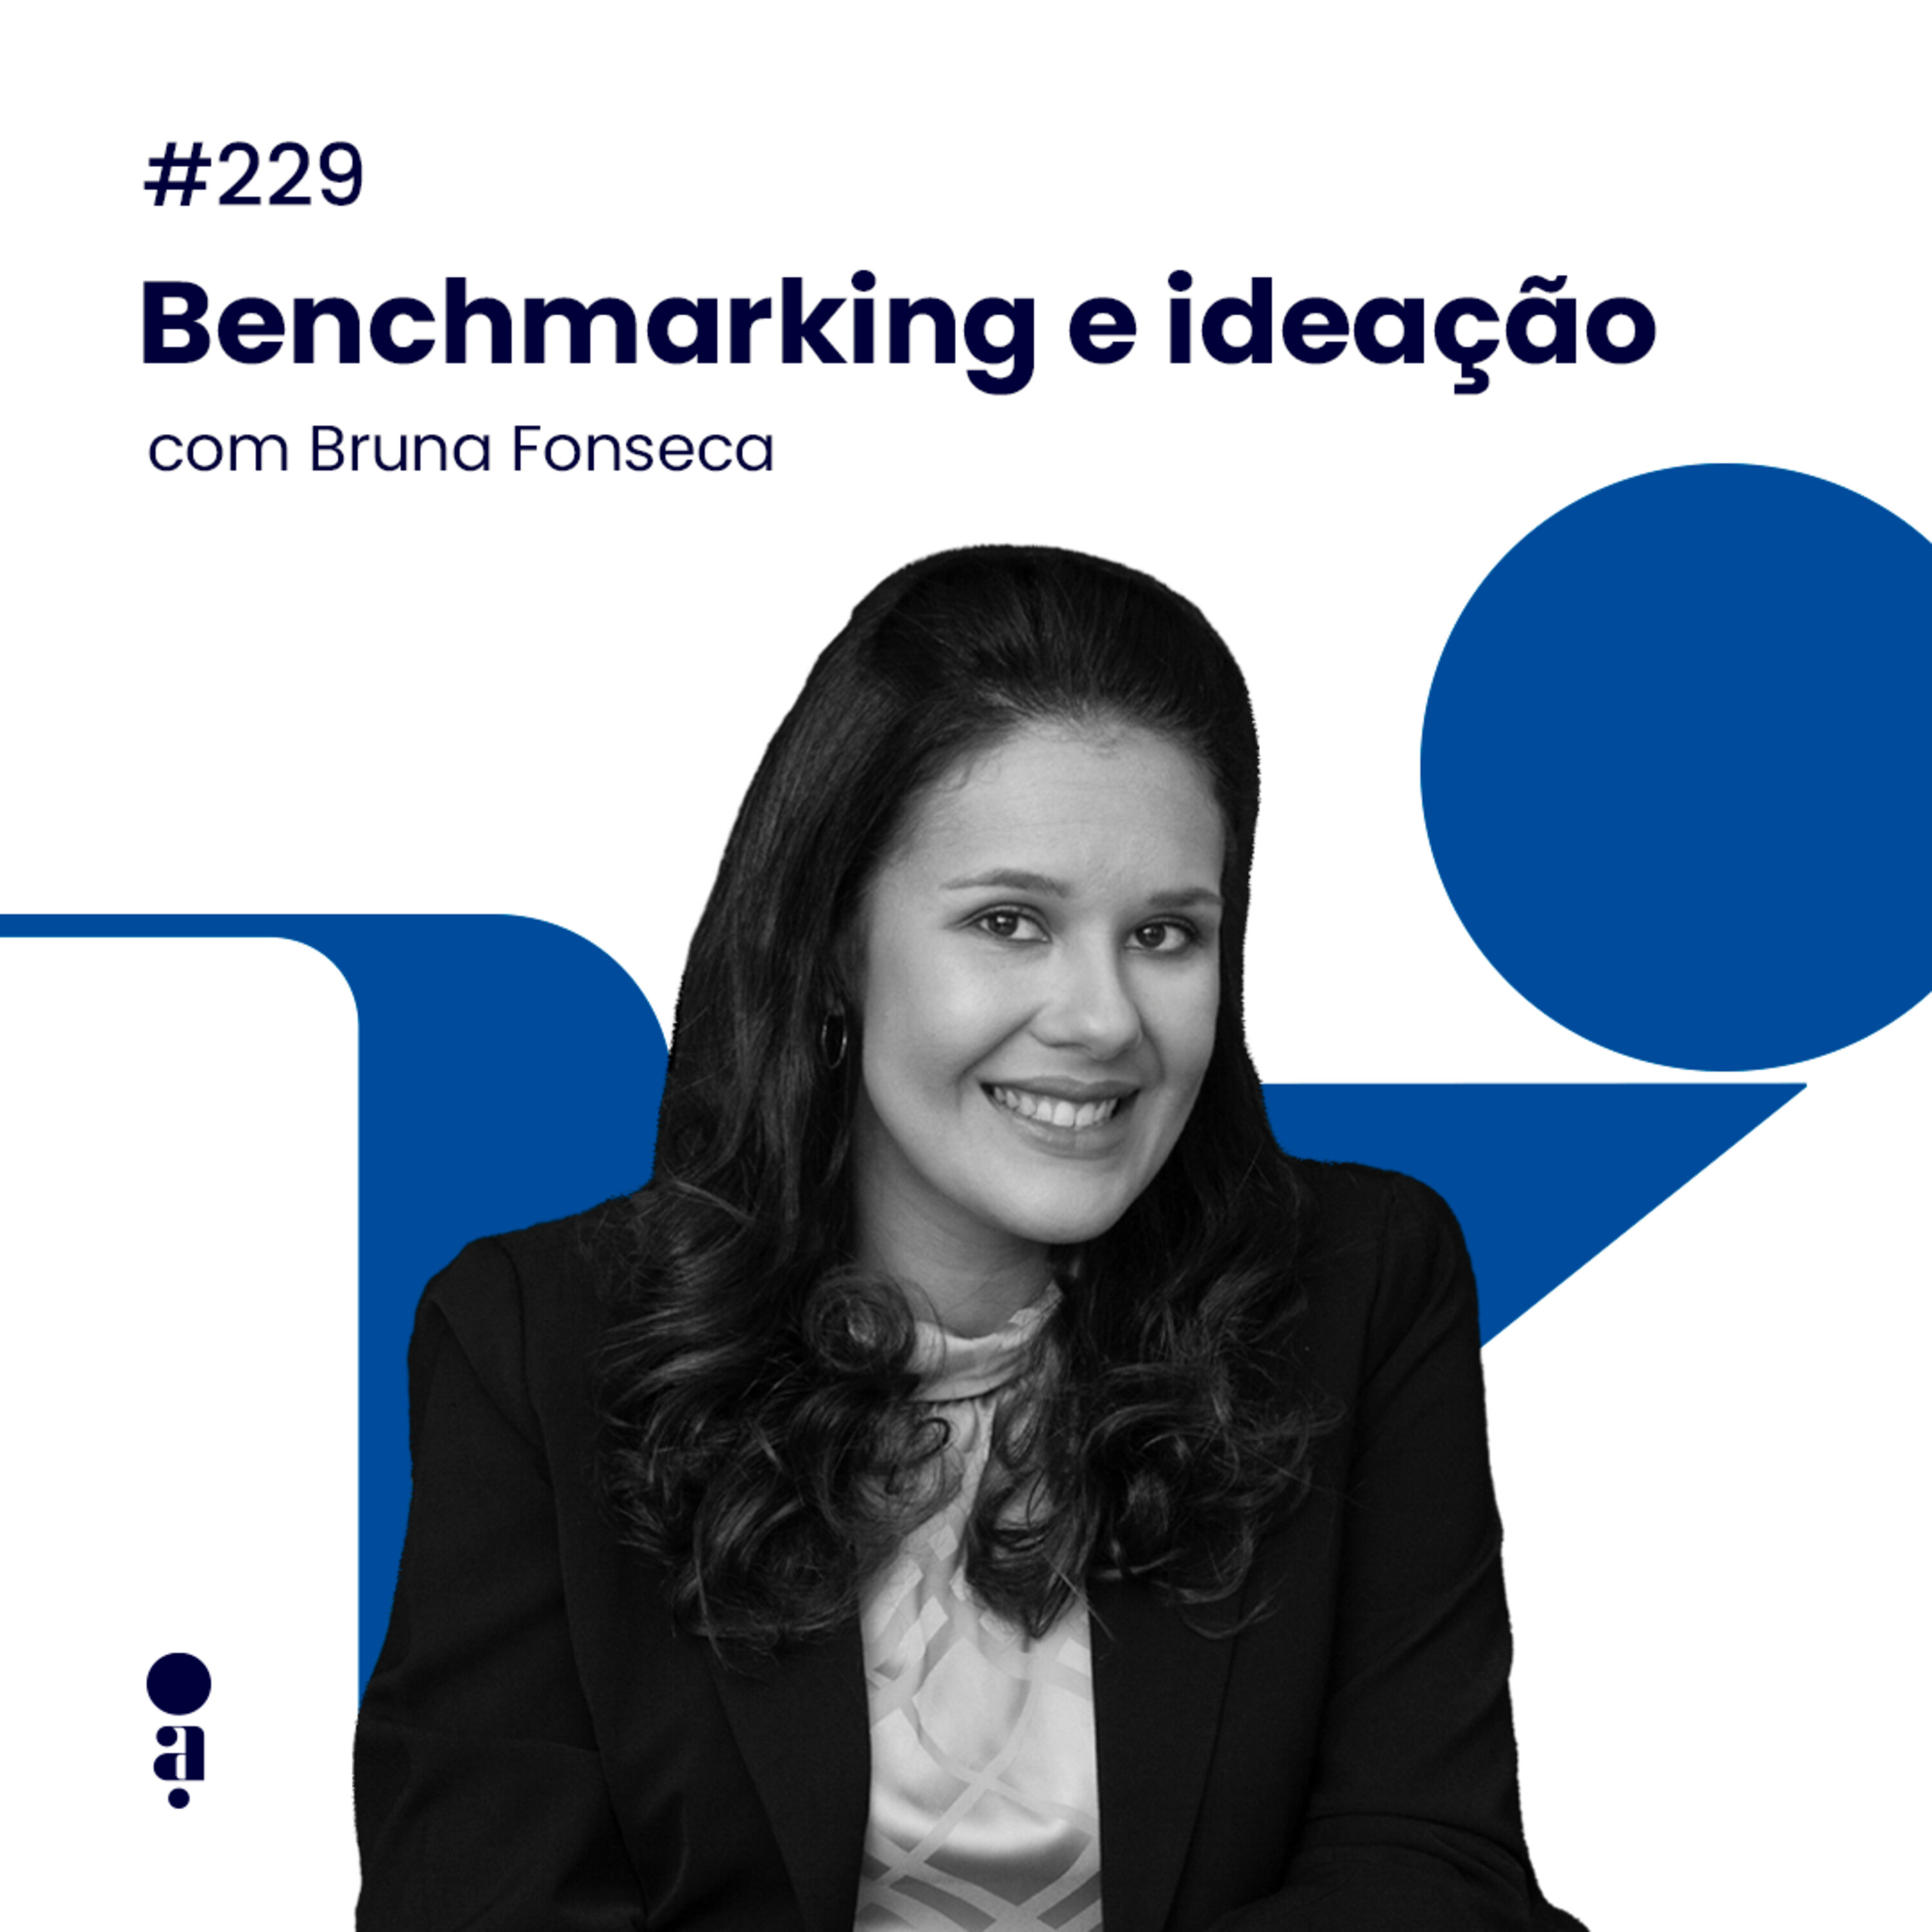 #229 - Benchmarking e ideação, com Bruna Fonseca